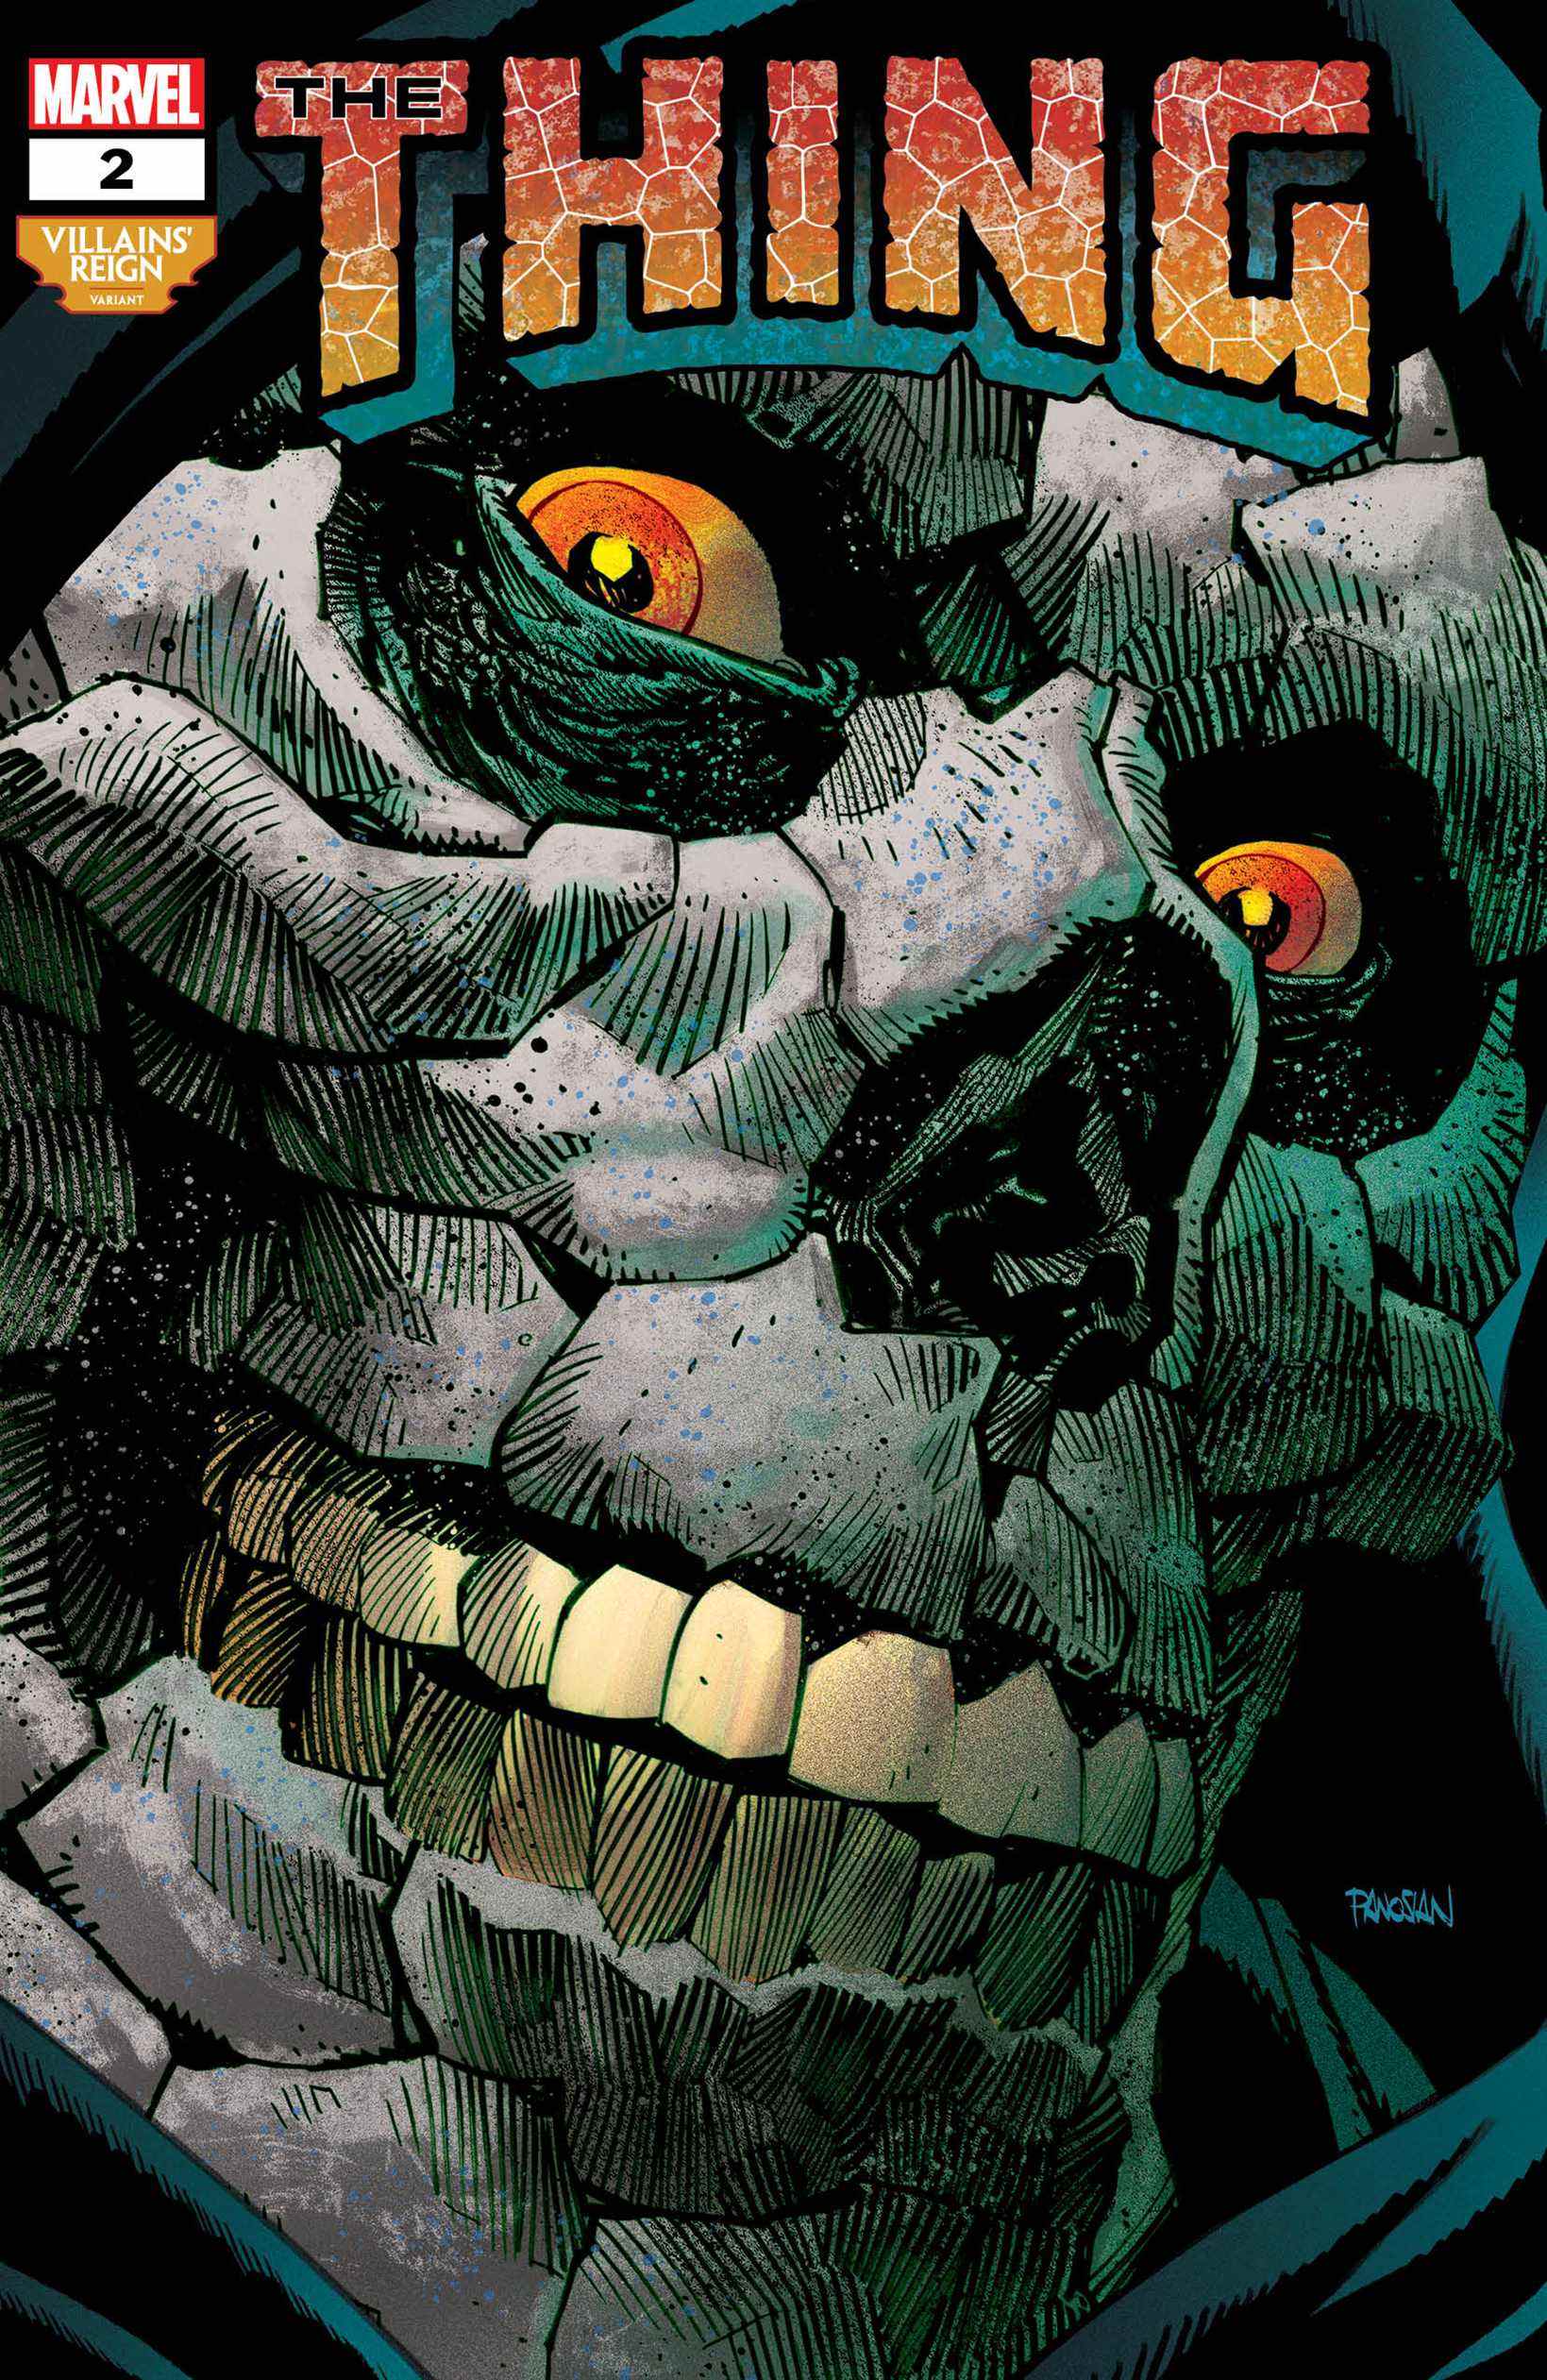 Couvertures des variantes de Marvel's Villains' Reign